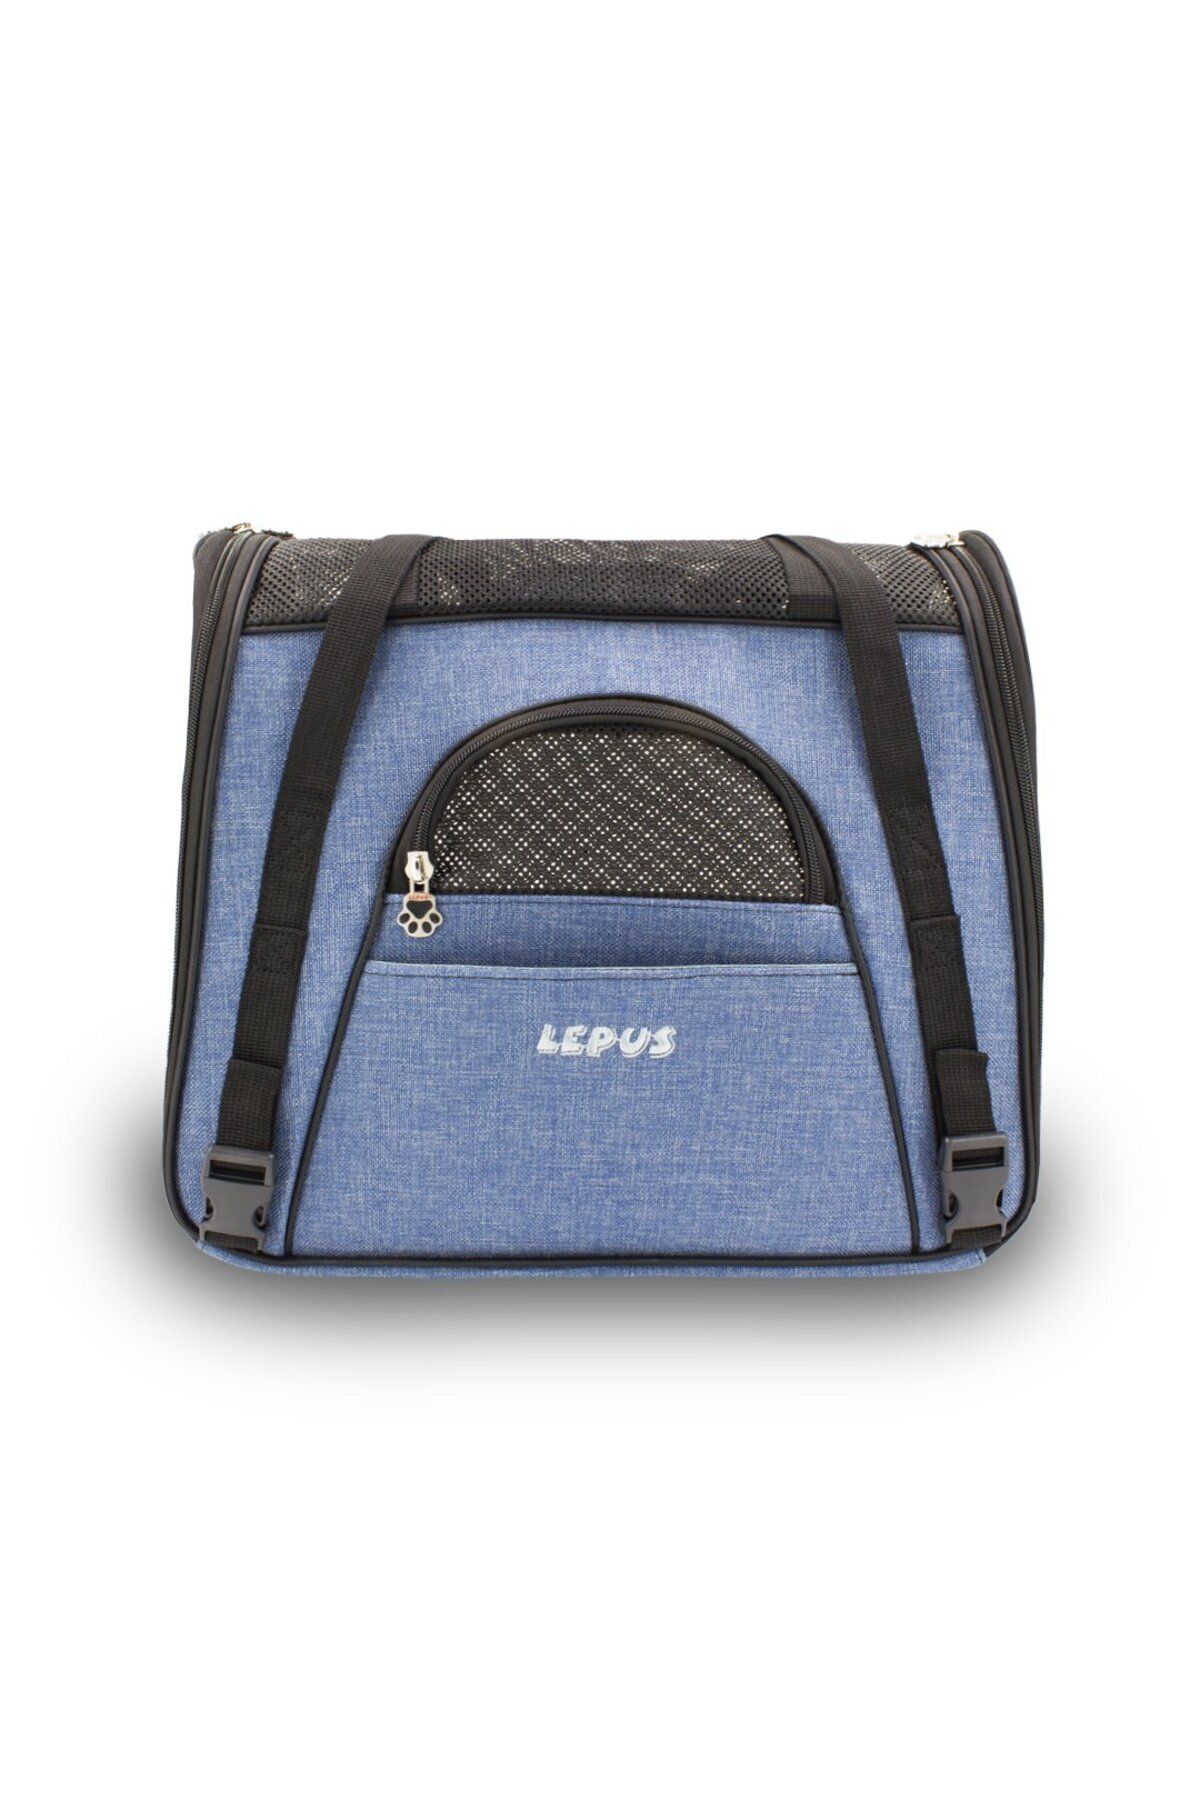 Lepus Kedi ve Köpek Taşıma Çantası Lepus Roomy Bag Mavi